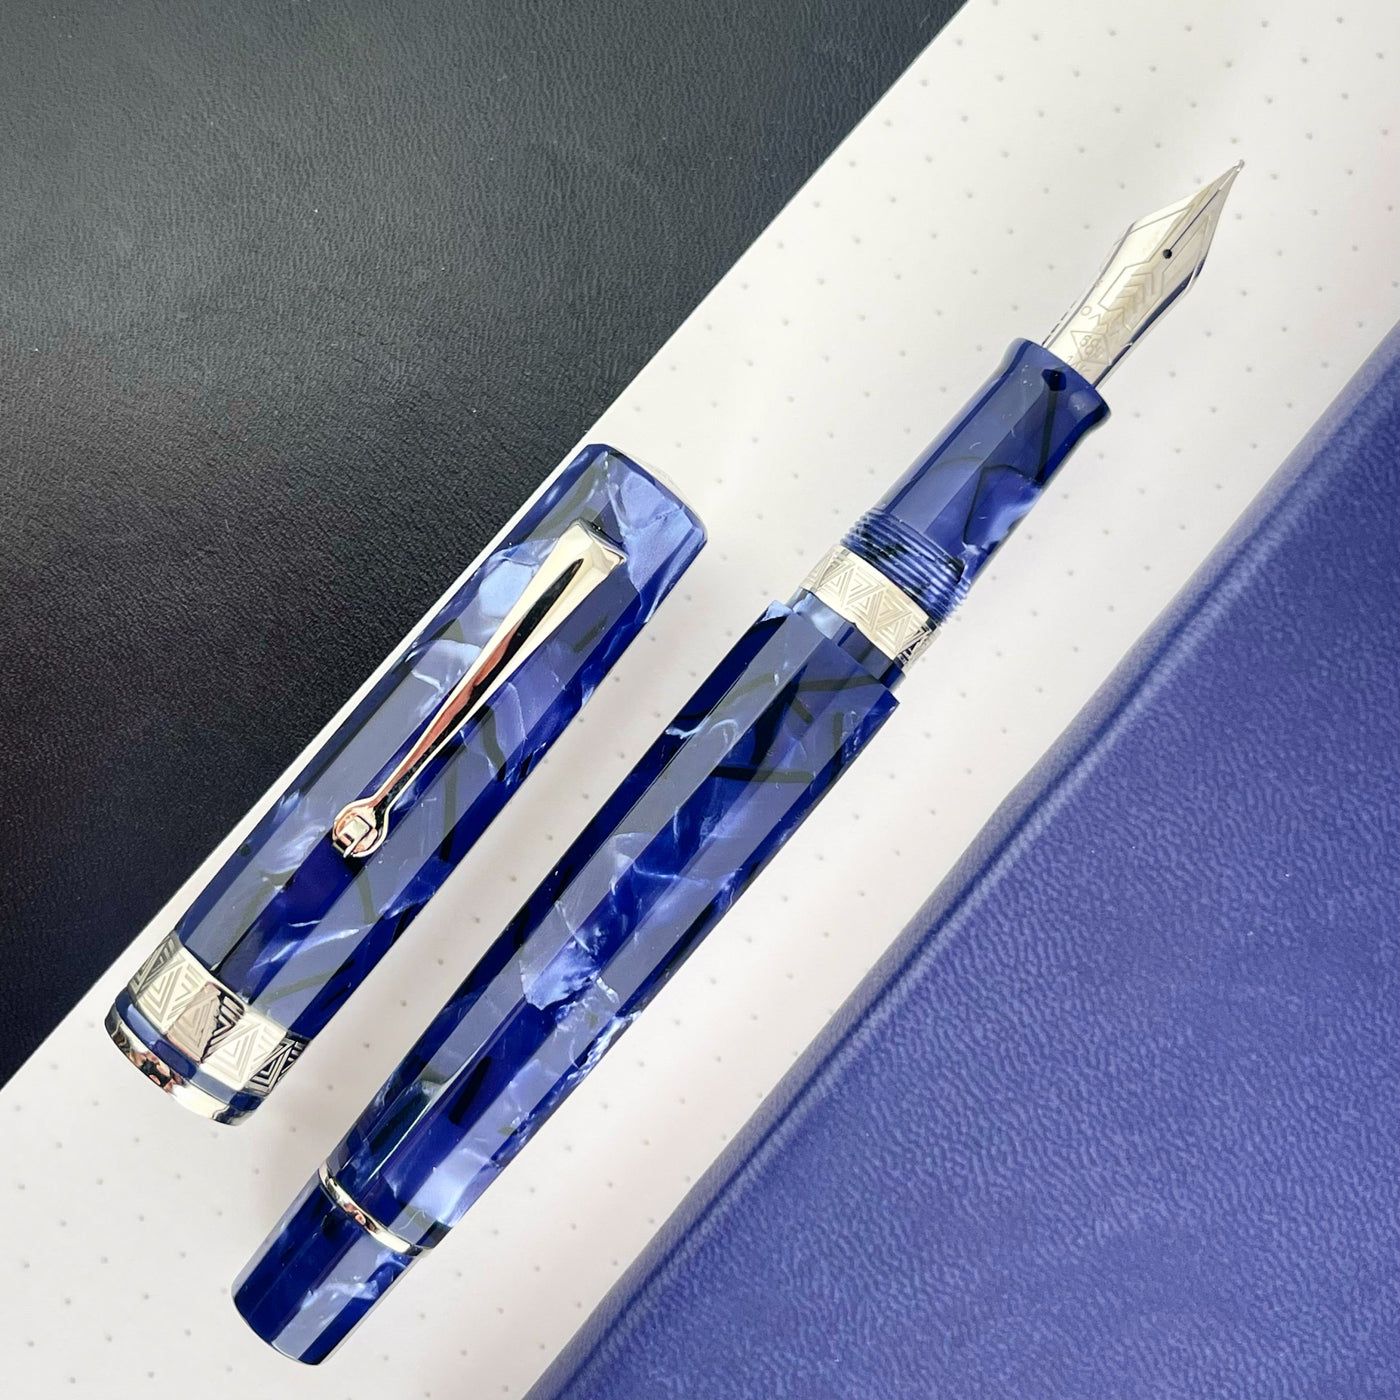 Omas Paragon Fountain Pen - Blue Royale w/ Silver